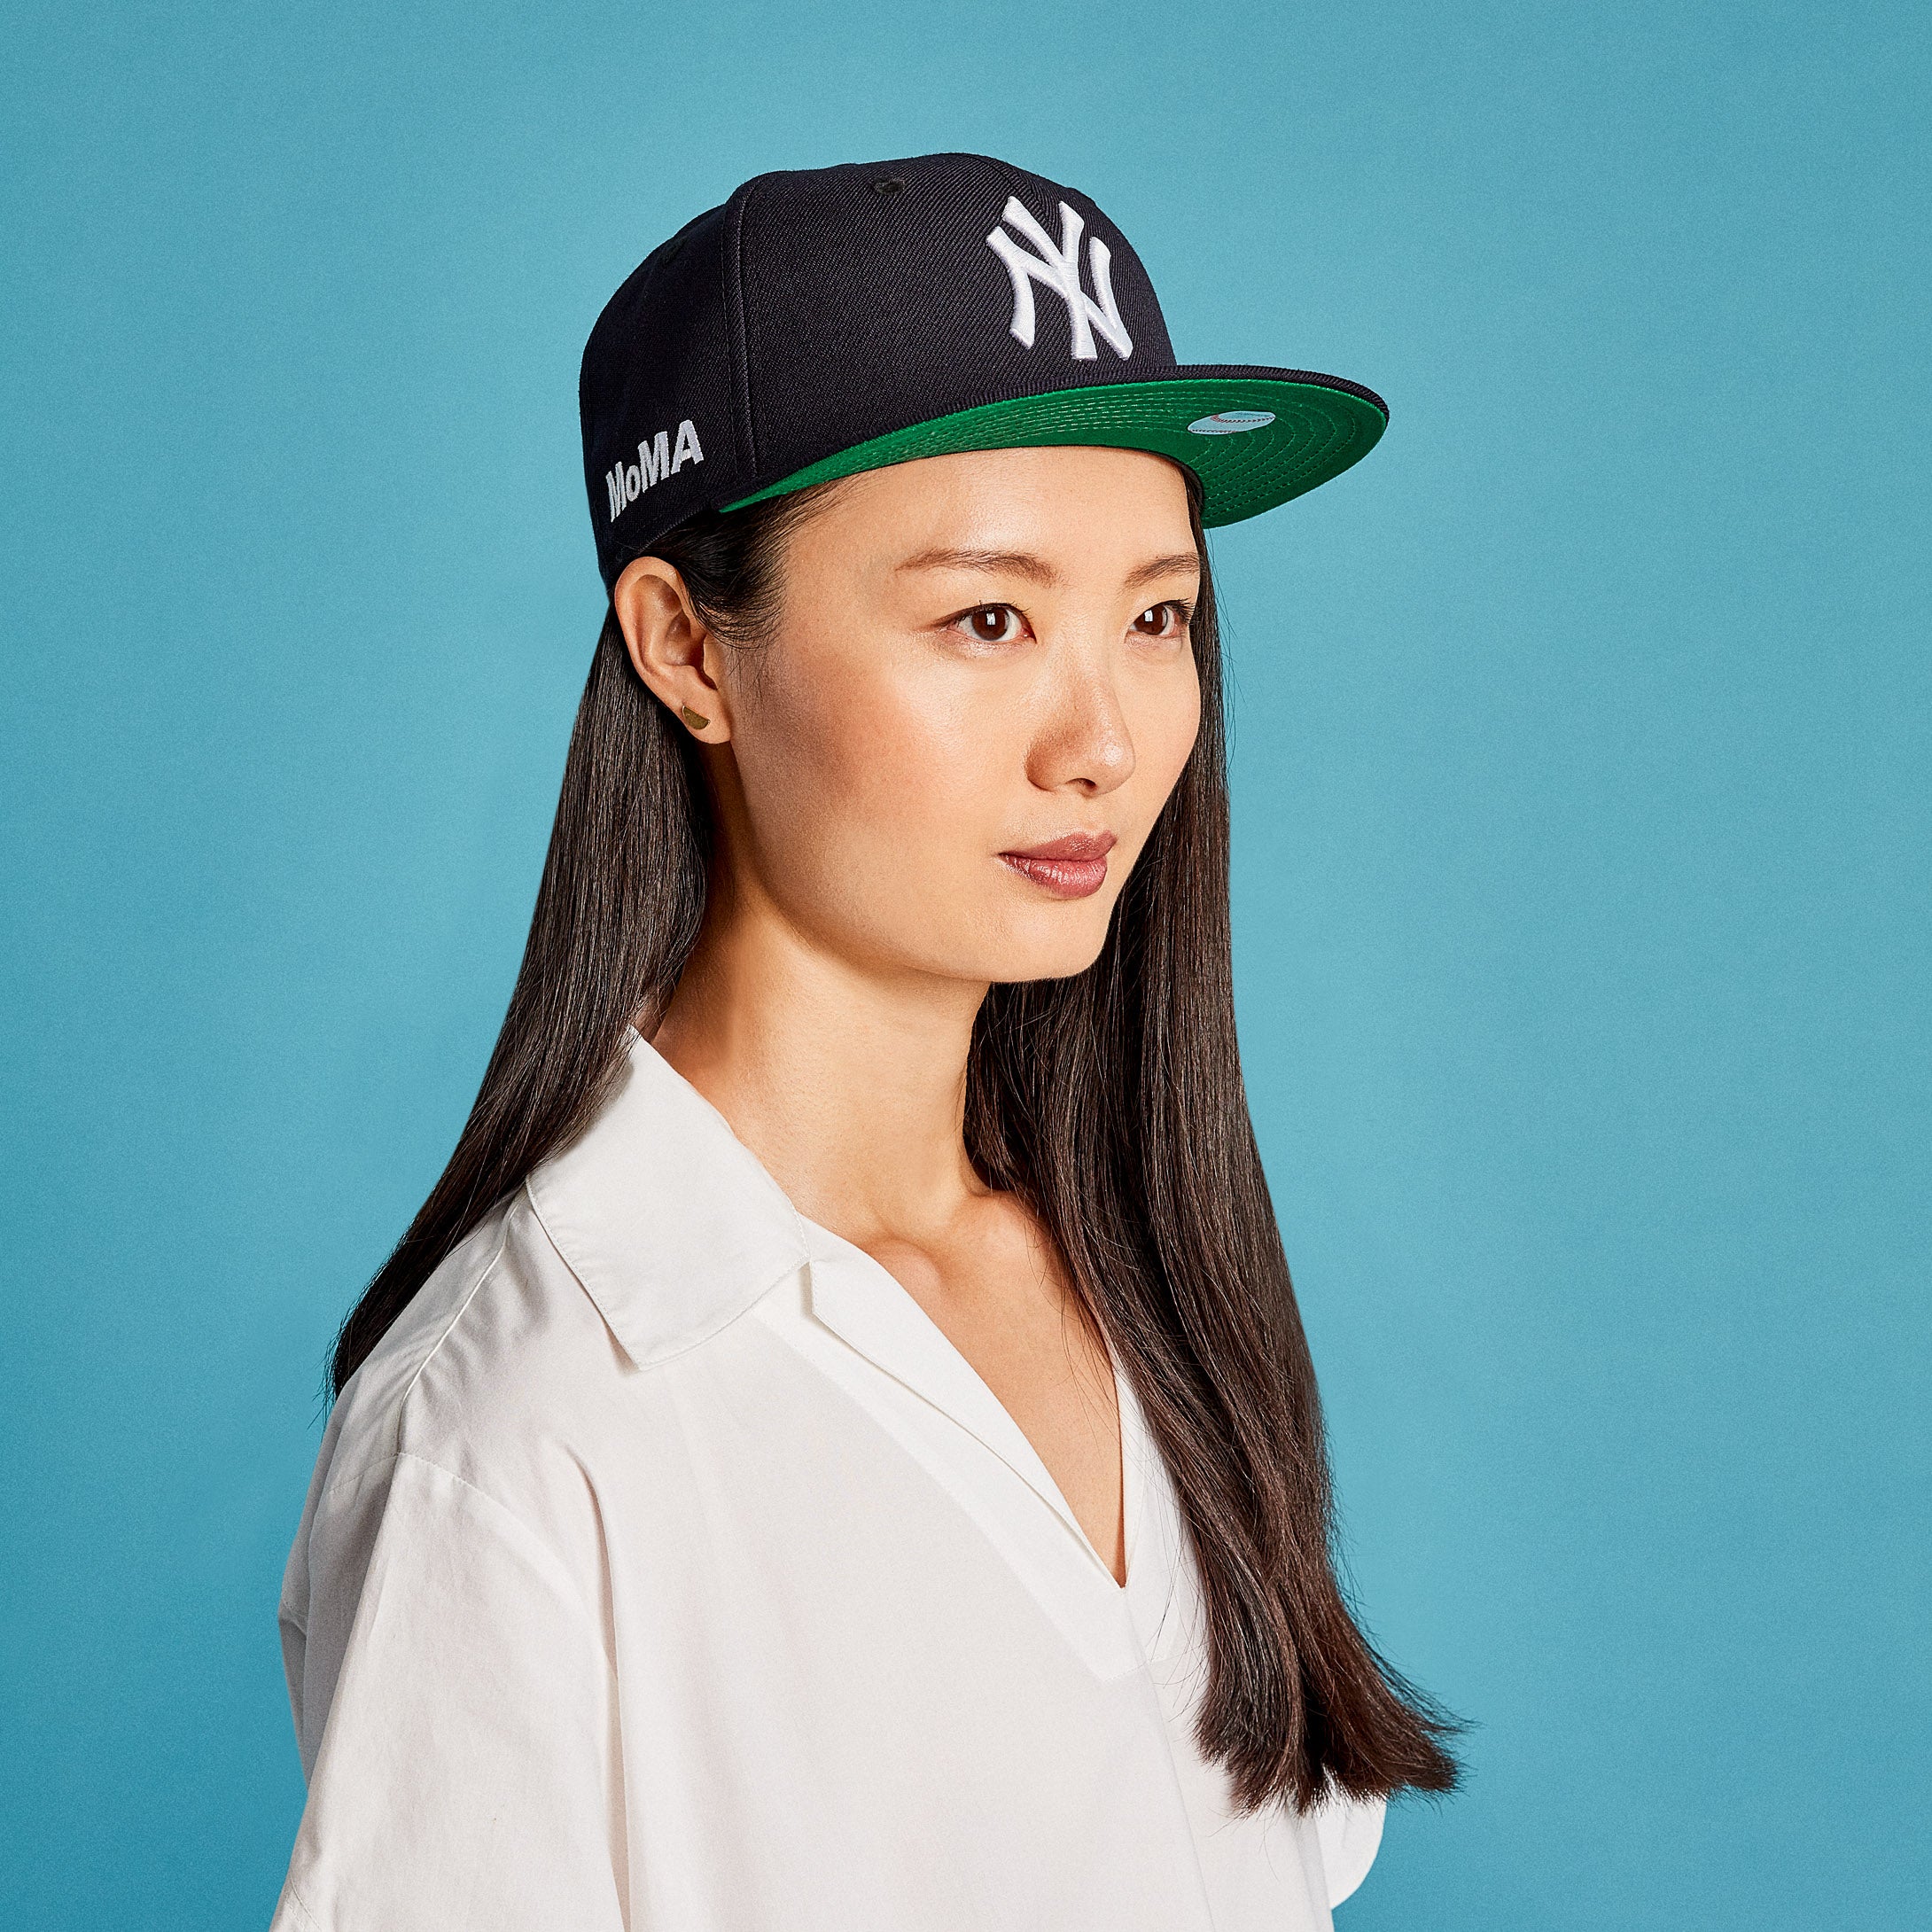 MoMA NY Yankees Baseball Cap - Wool